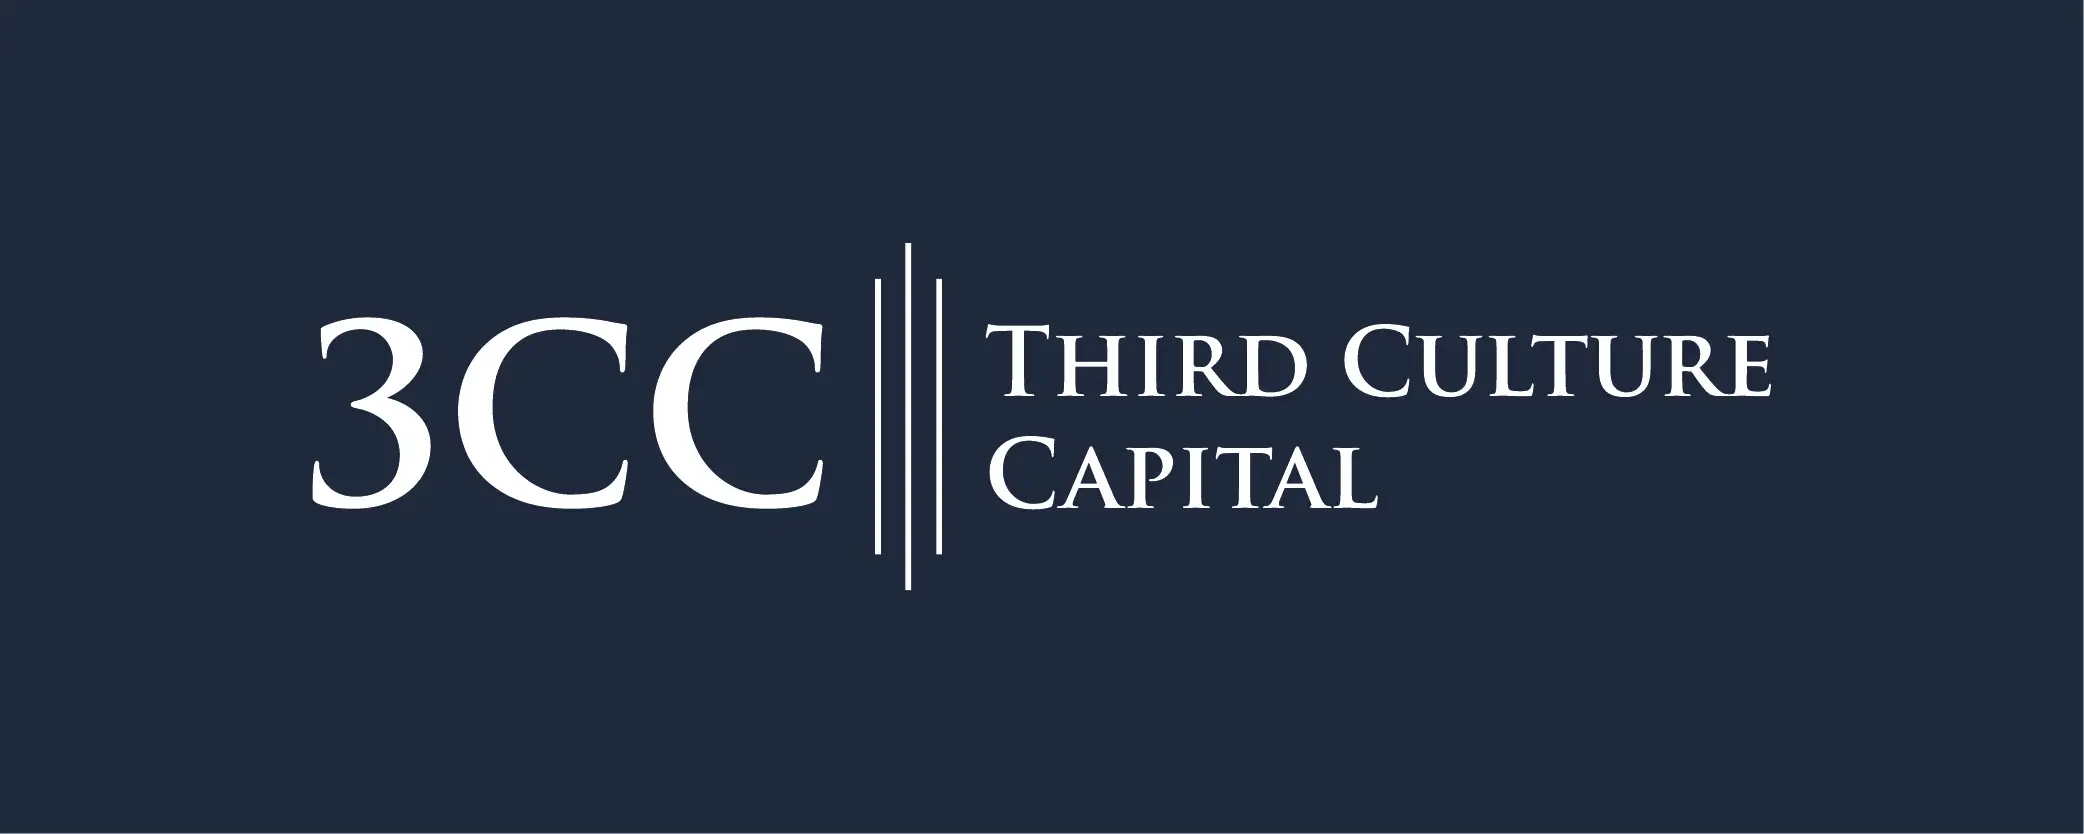 3cc - Third Culture Capital